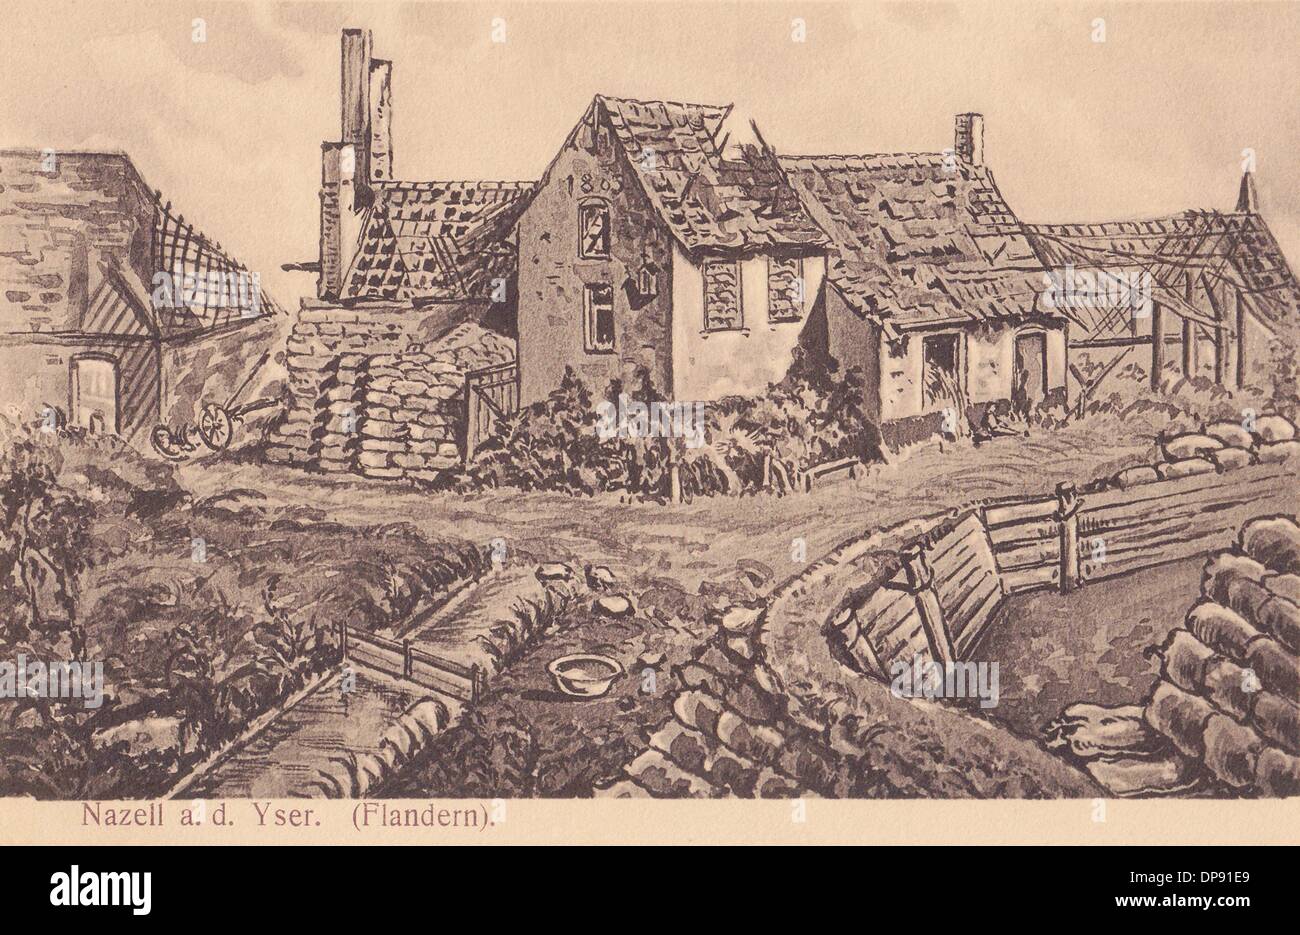 Une carte postale allemande datant de la première Guerre mondiale montre une ferme détruite à Nazell sur le fleuve Yser en Flandre Occidentale, Belgique, en 1915. Fotoarchiv für Zeitgeschichte Banque D'Images